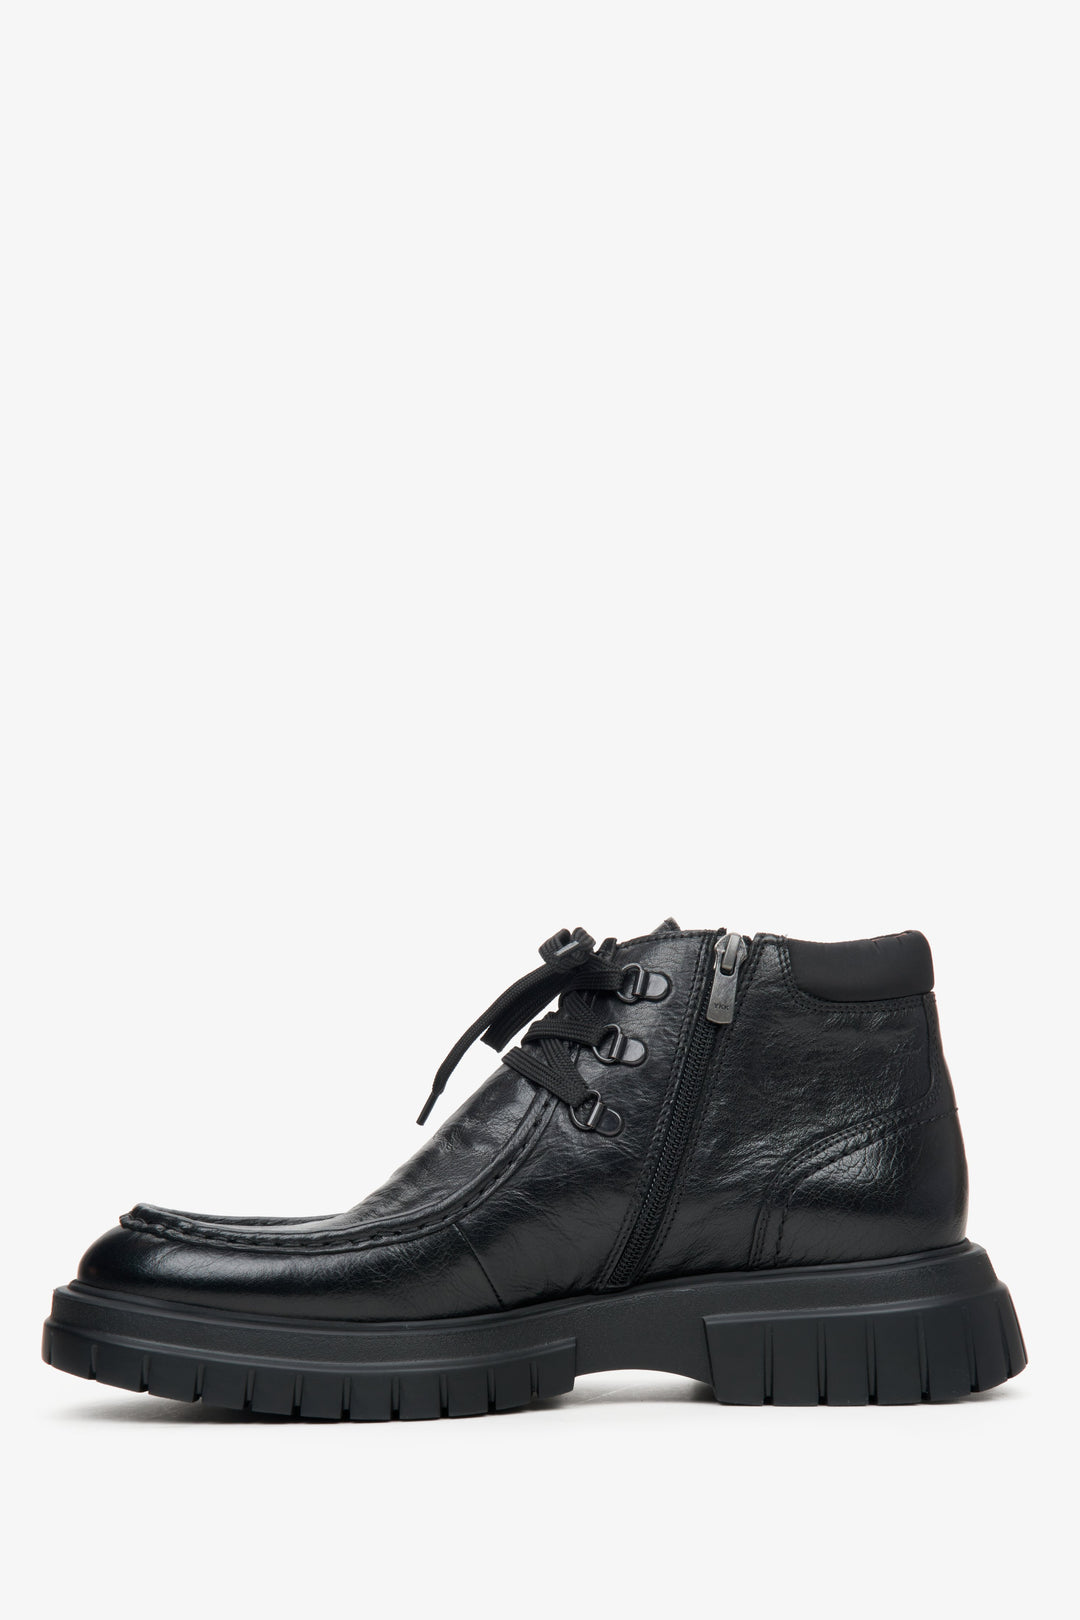 Men's black  Estro boots - shoe profile.